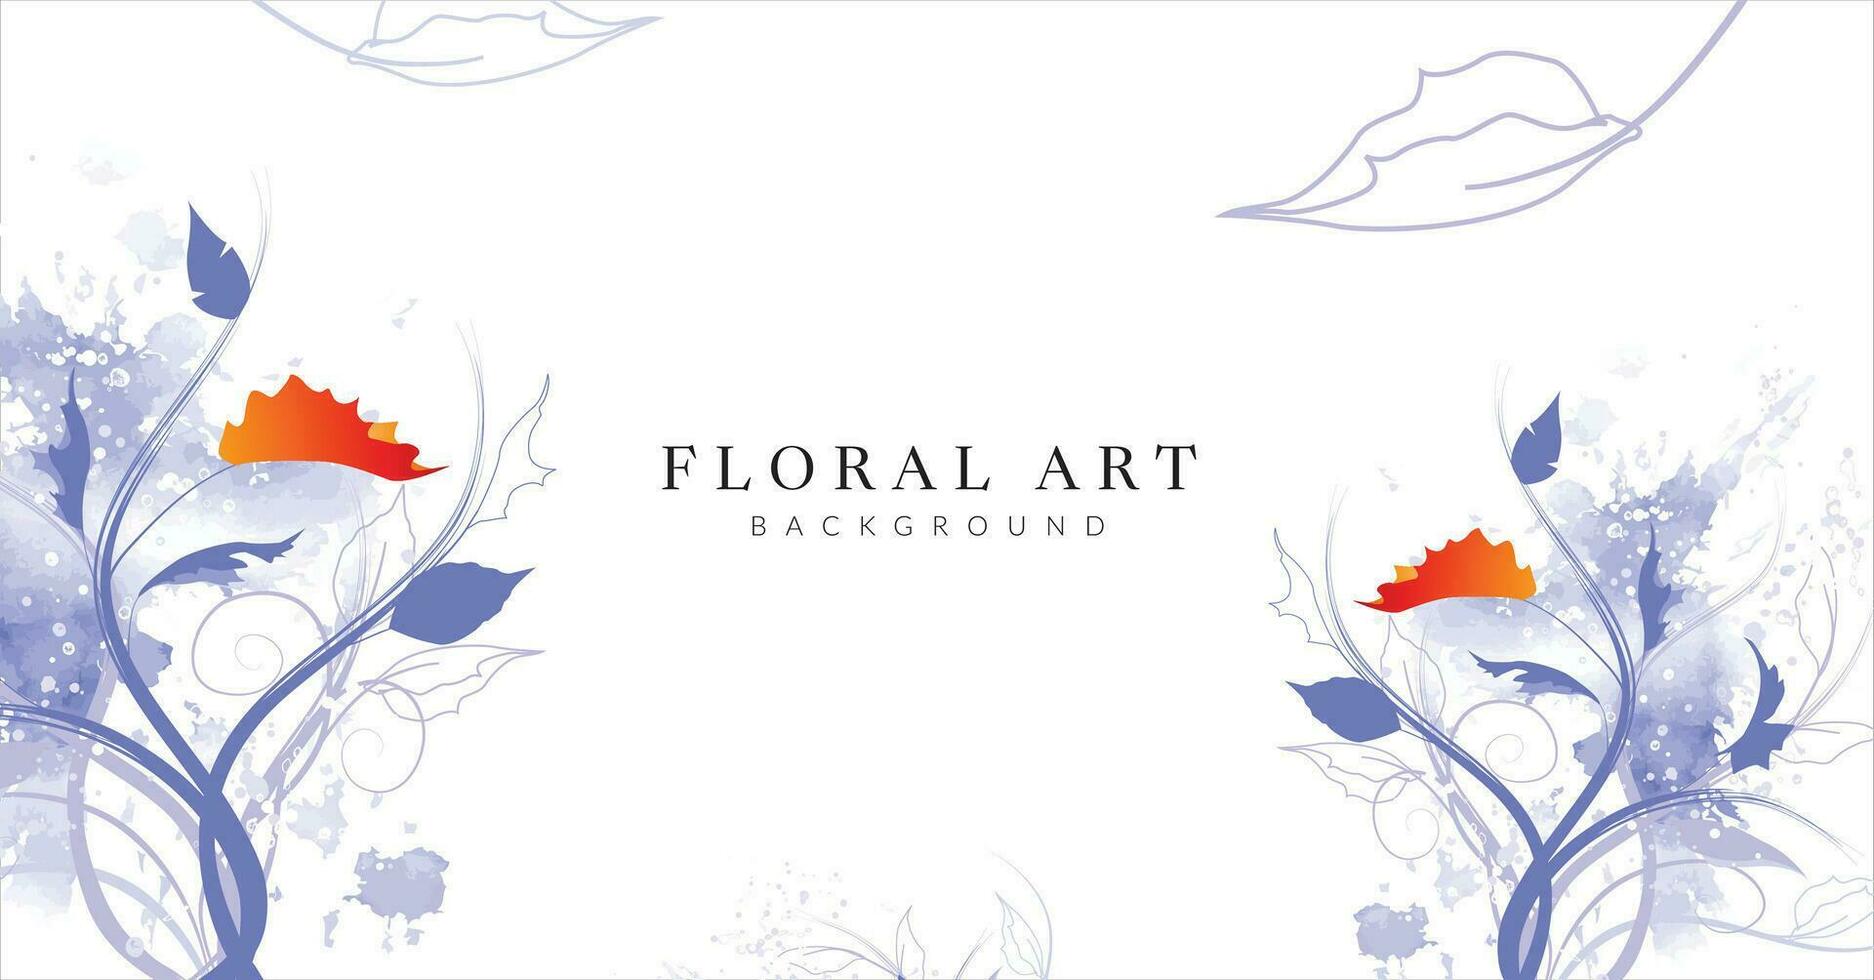 uma vetor ilustração do floral arte fundo com cópia de espaço